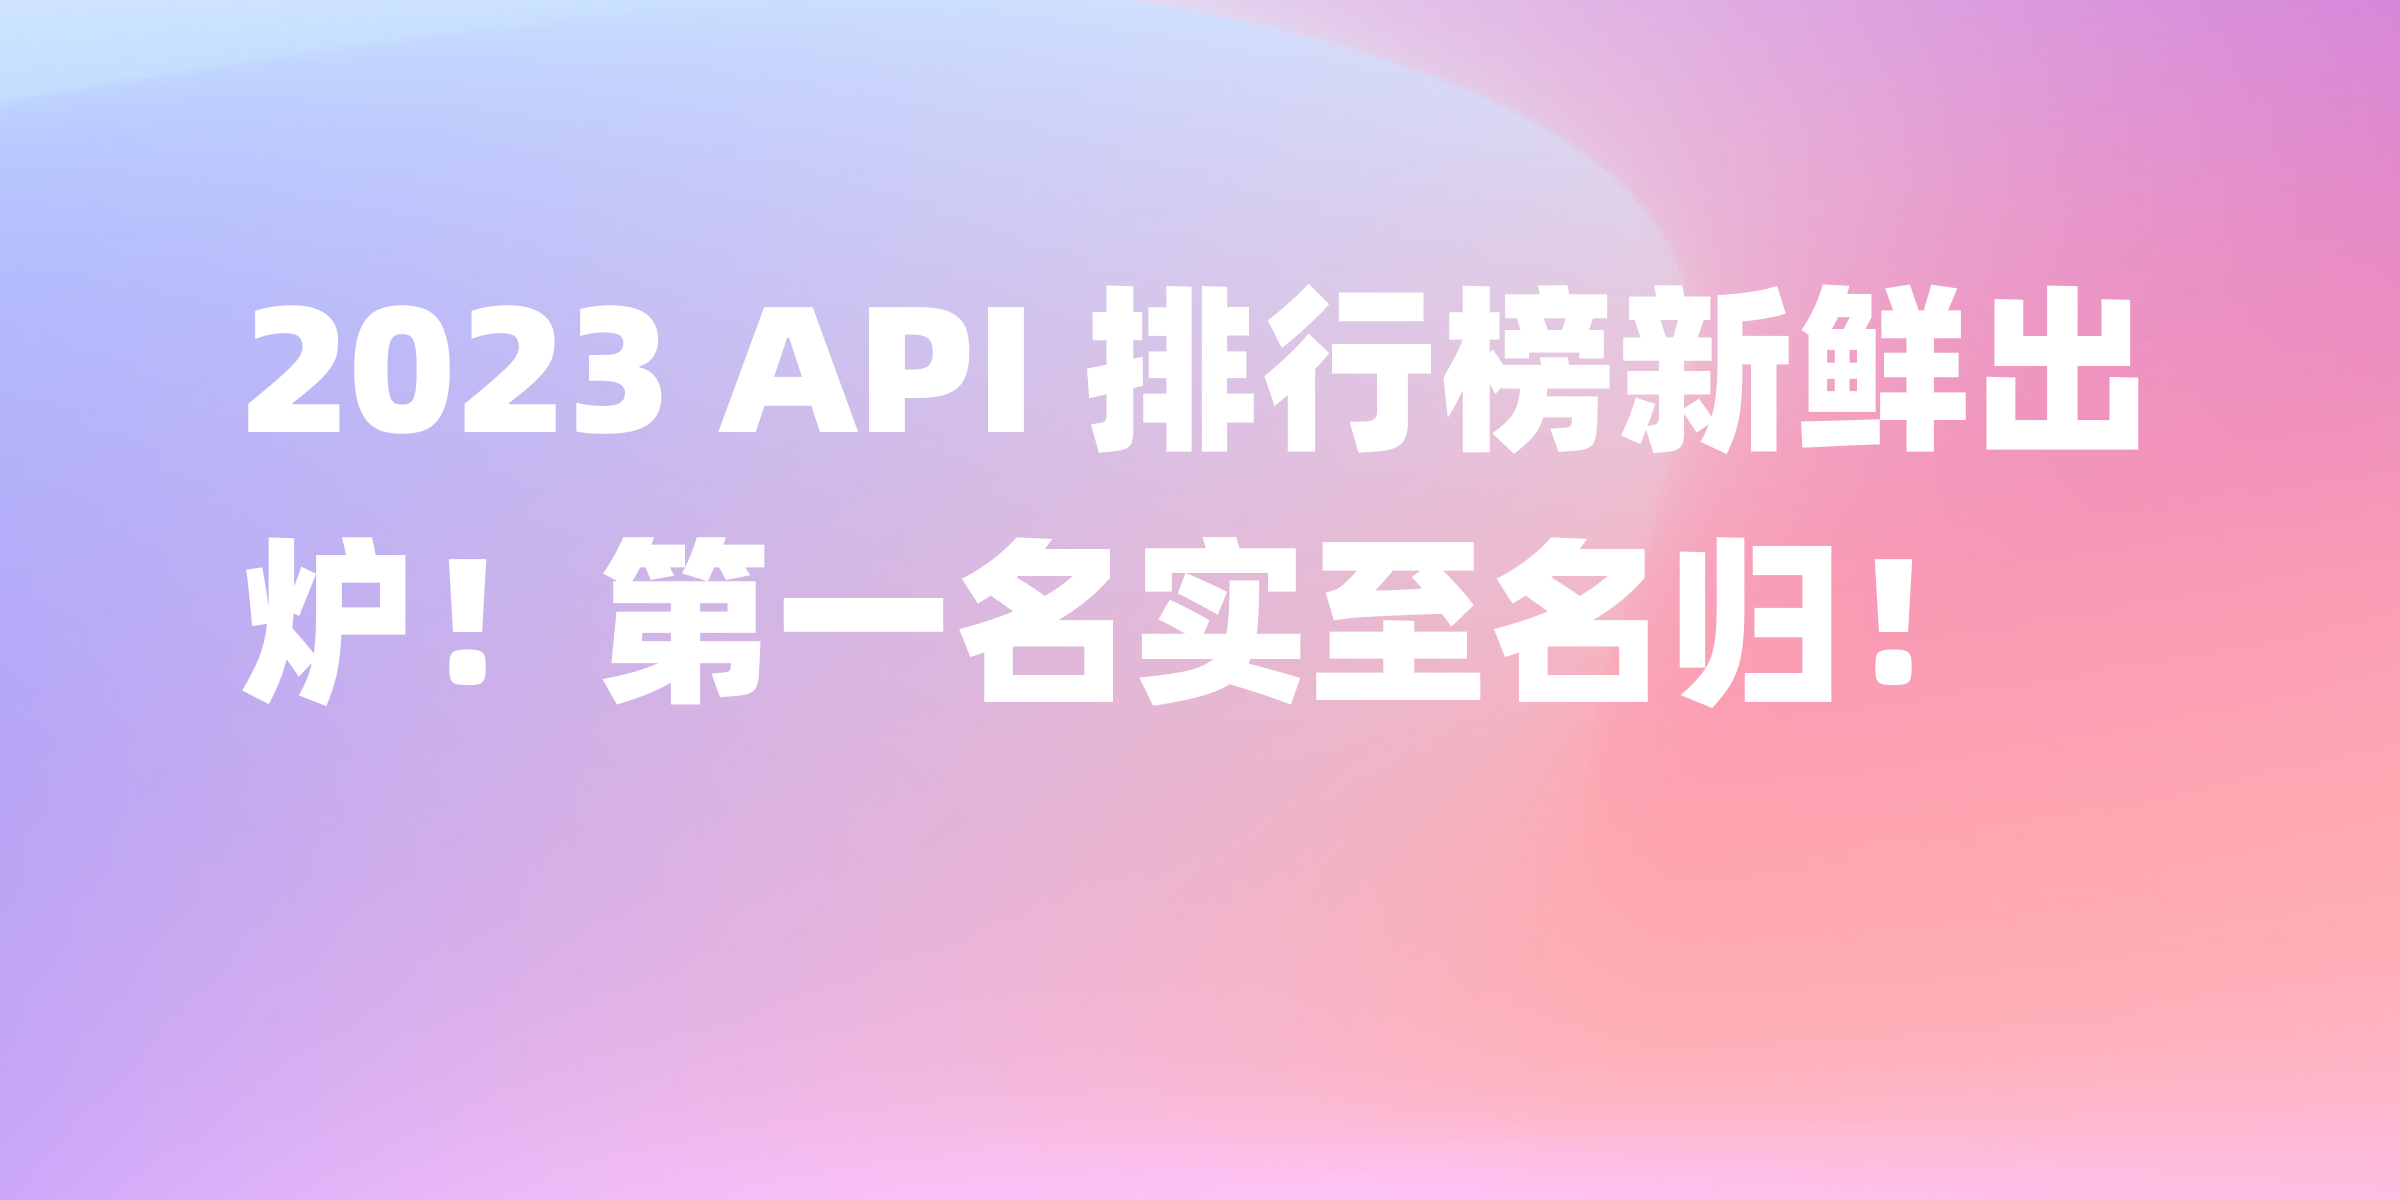 2023 年 API 排行榜热门榜单揭晓